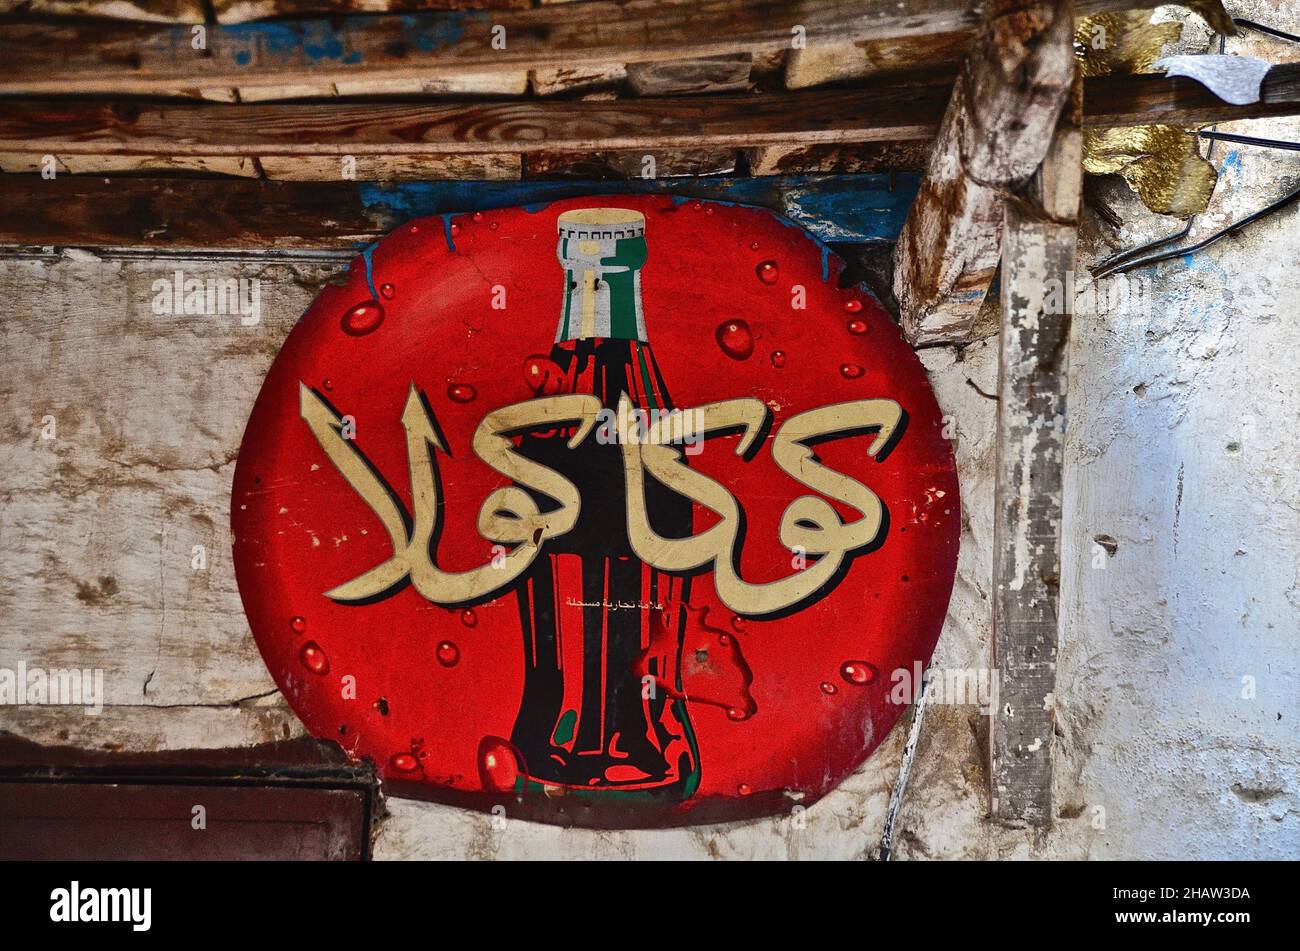 Arabisches Coca-Cola-Schild, Coca-Cola-Werbung auf Arabisch, rundes Schild mit Coca-Cola-Flasche, Tanger-Tetouan-Al Hoceima, Marokko Stockfoto